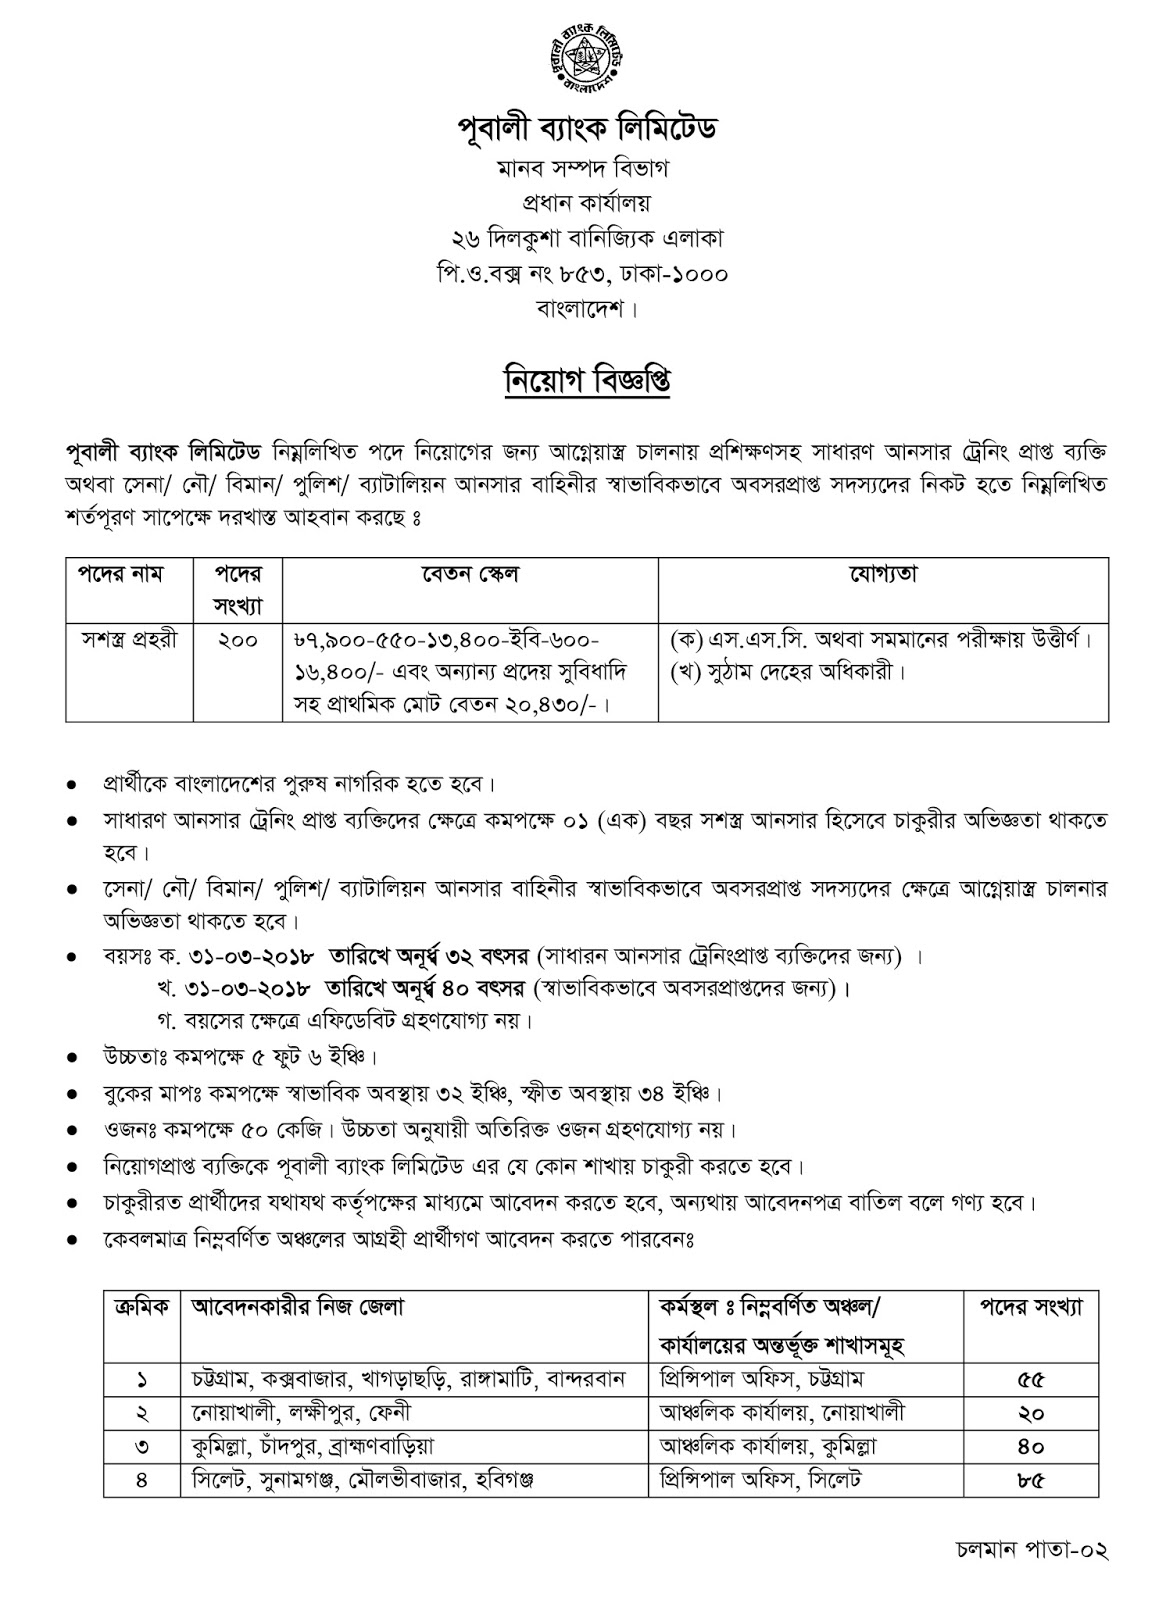 Pubali Bank limited (PBL) Job Circular 2018